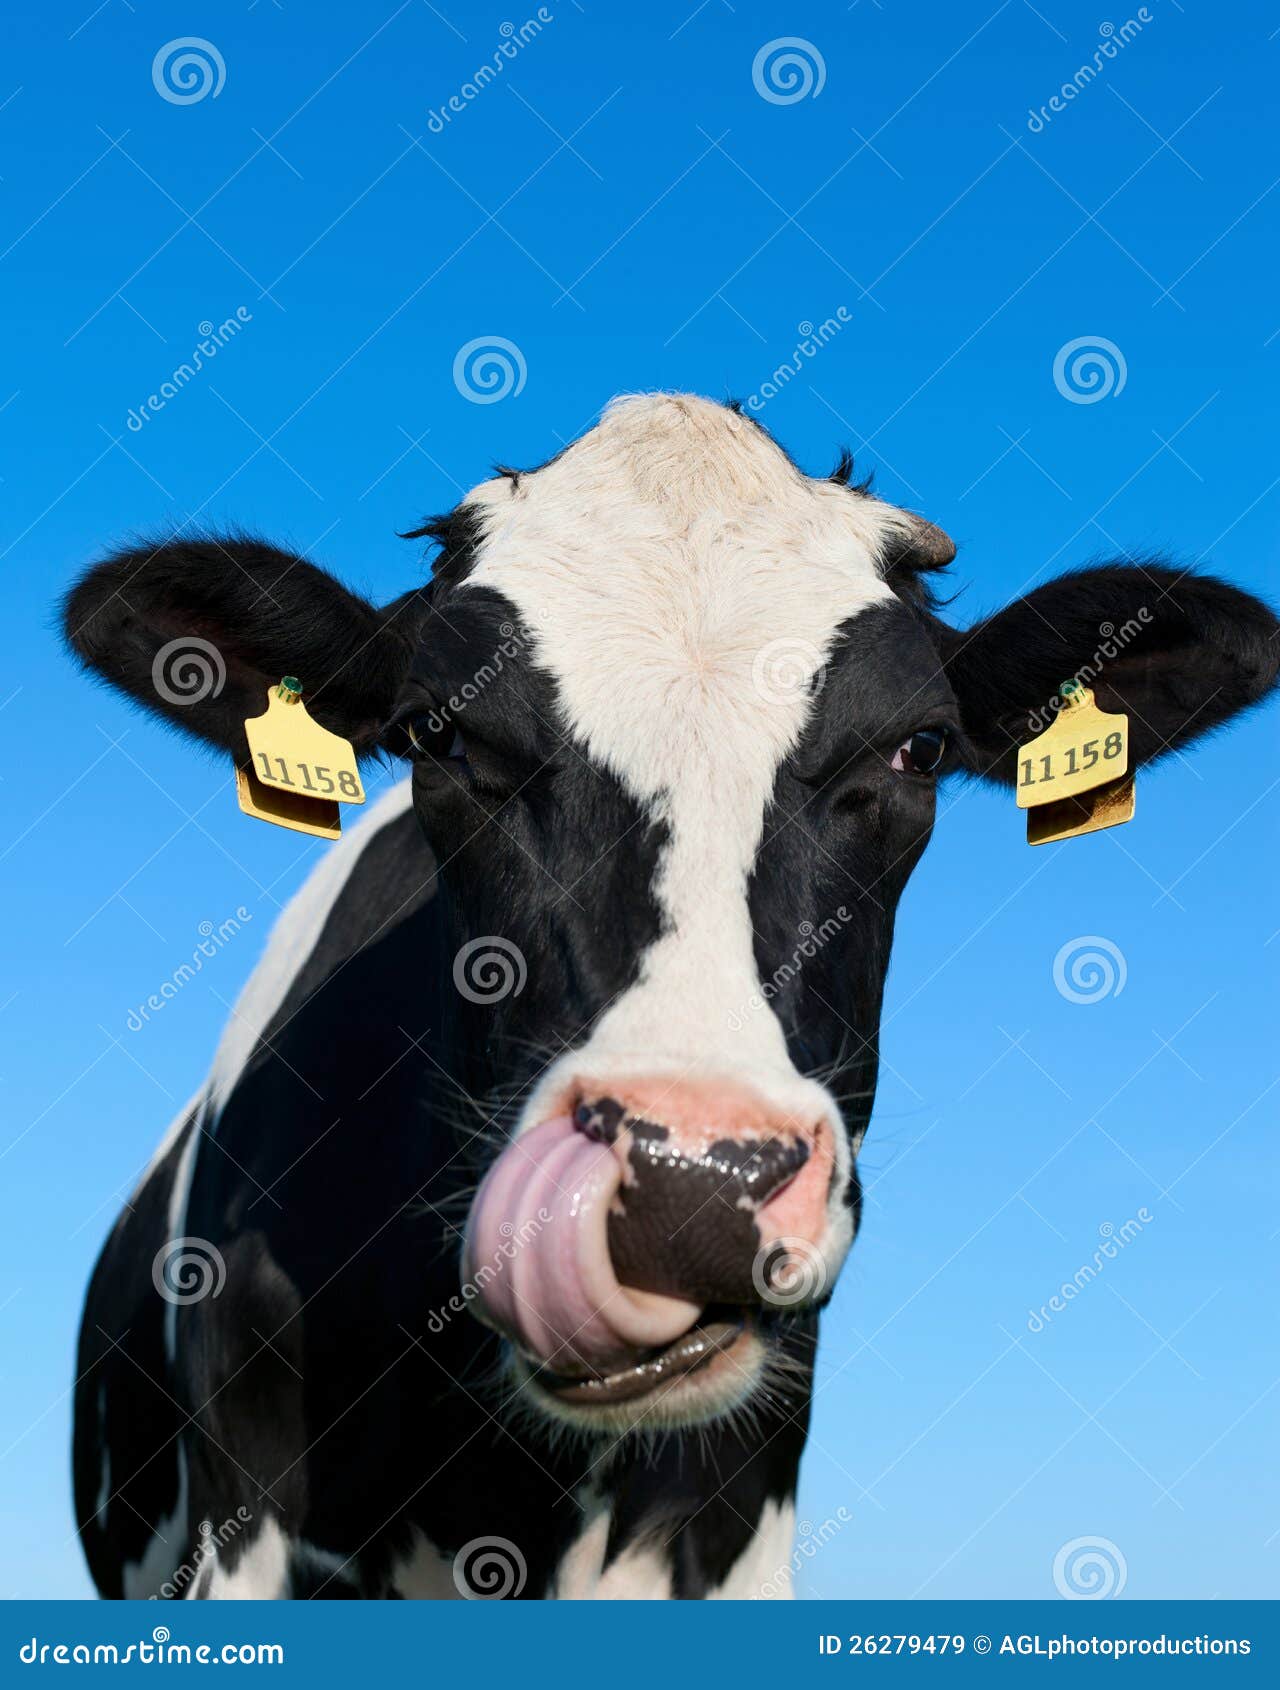 curious holstein cow